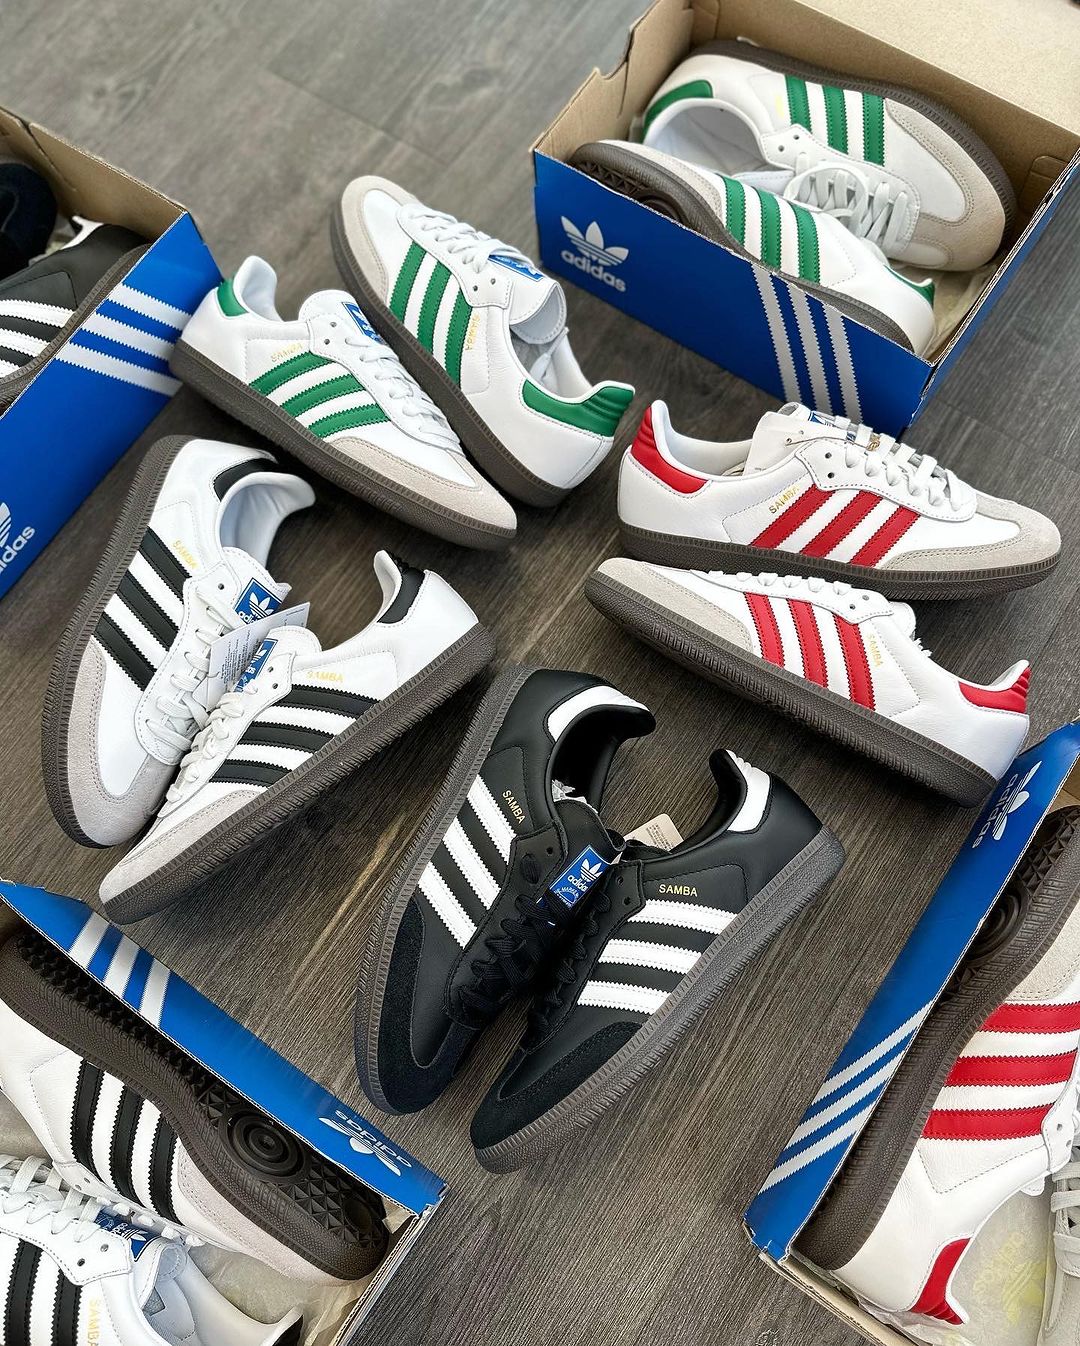 Adidas - LK Sneakers